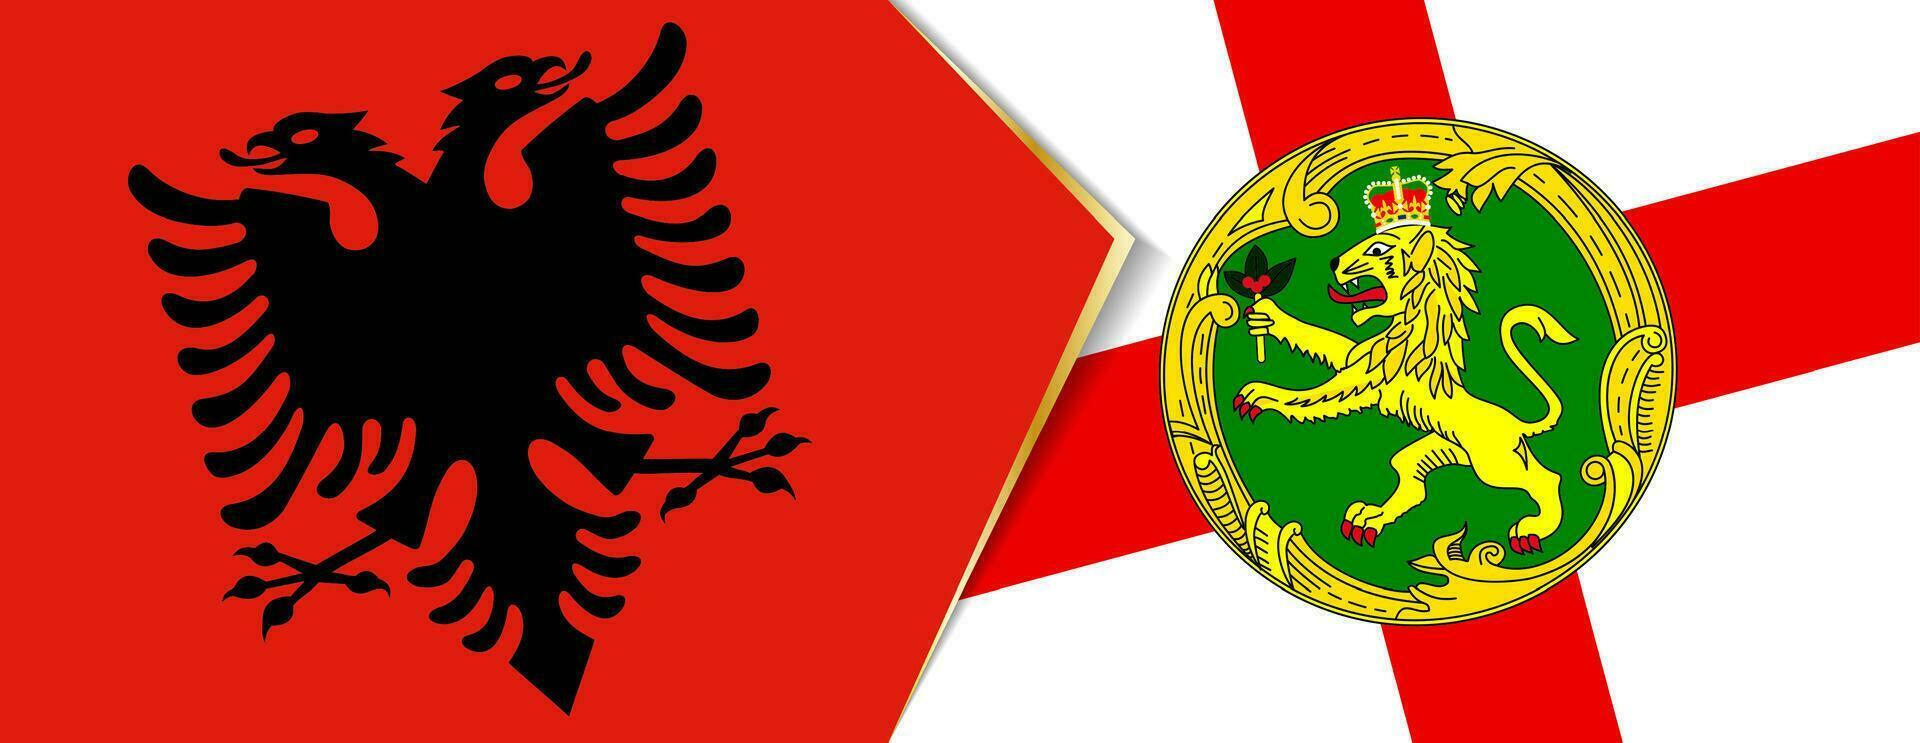 Albanien und alderney Flaggen, zwei Vektor Flaggen.